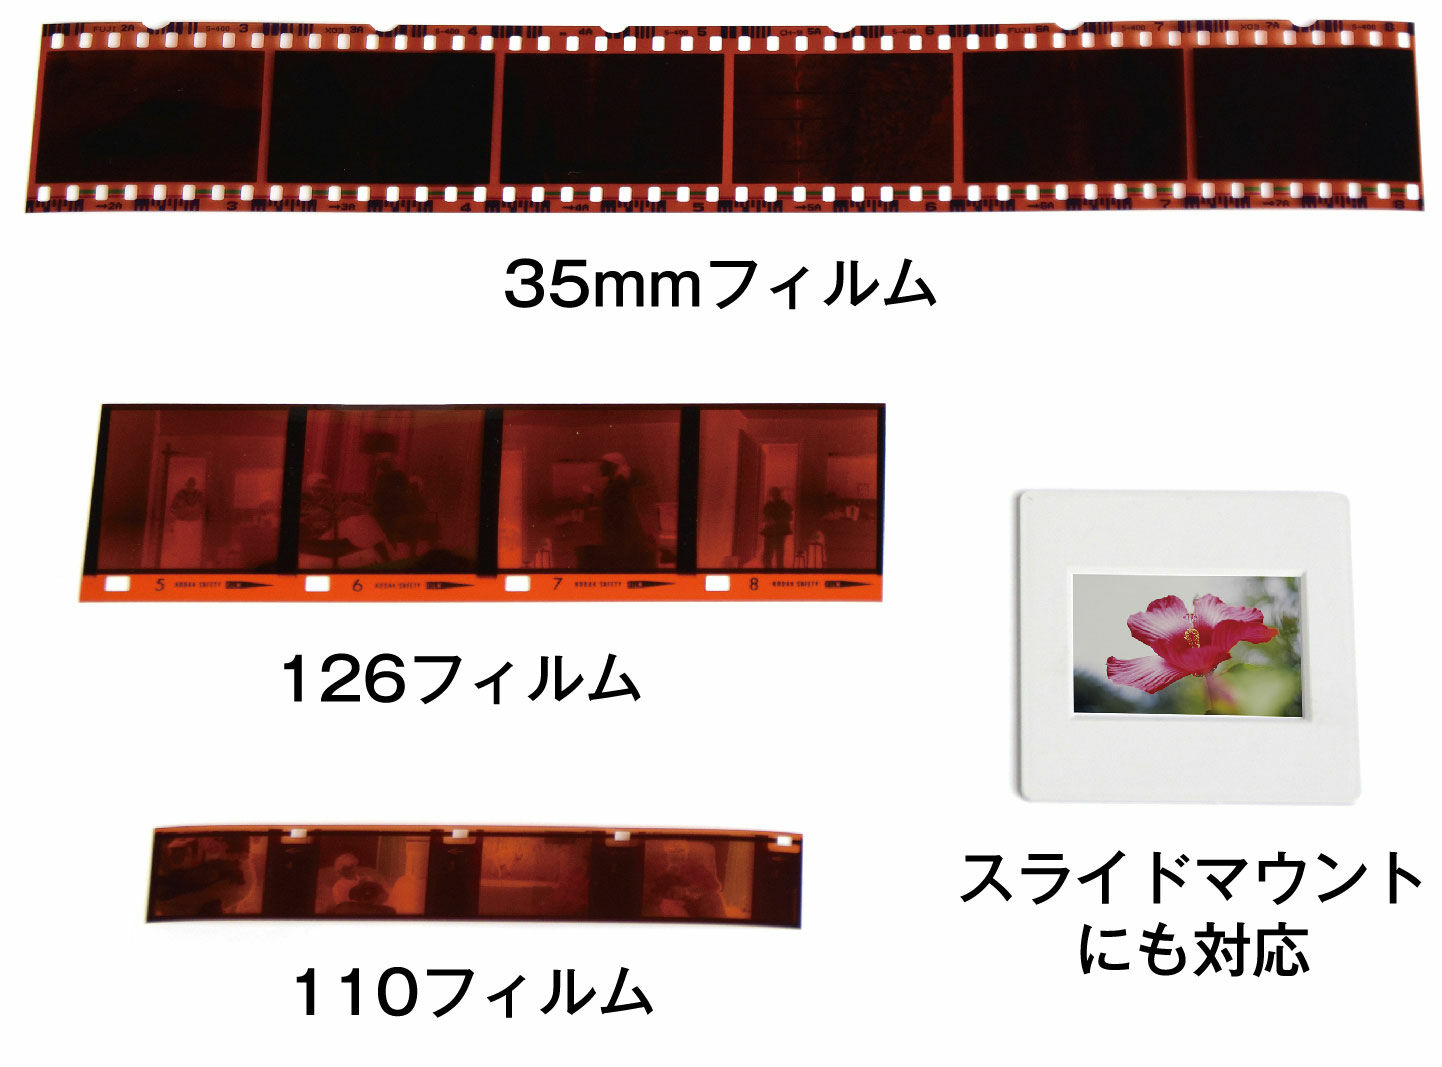 5インチ液晶フィルムスキャナー KFS-14WS| ケンコー・トキナー